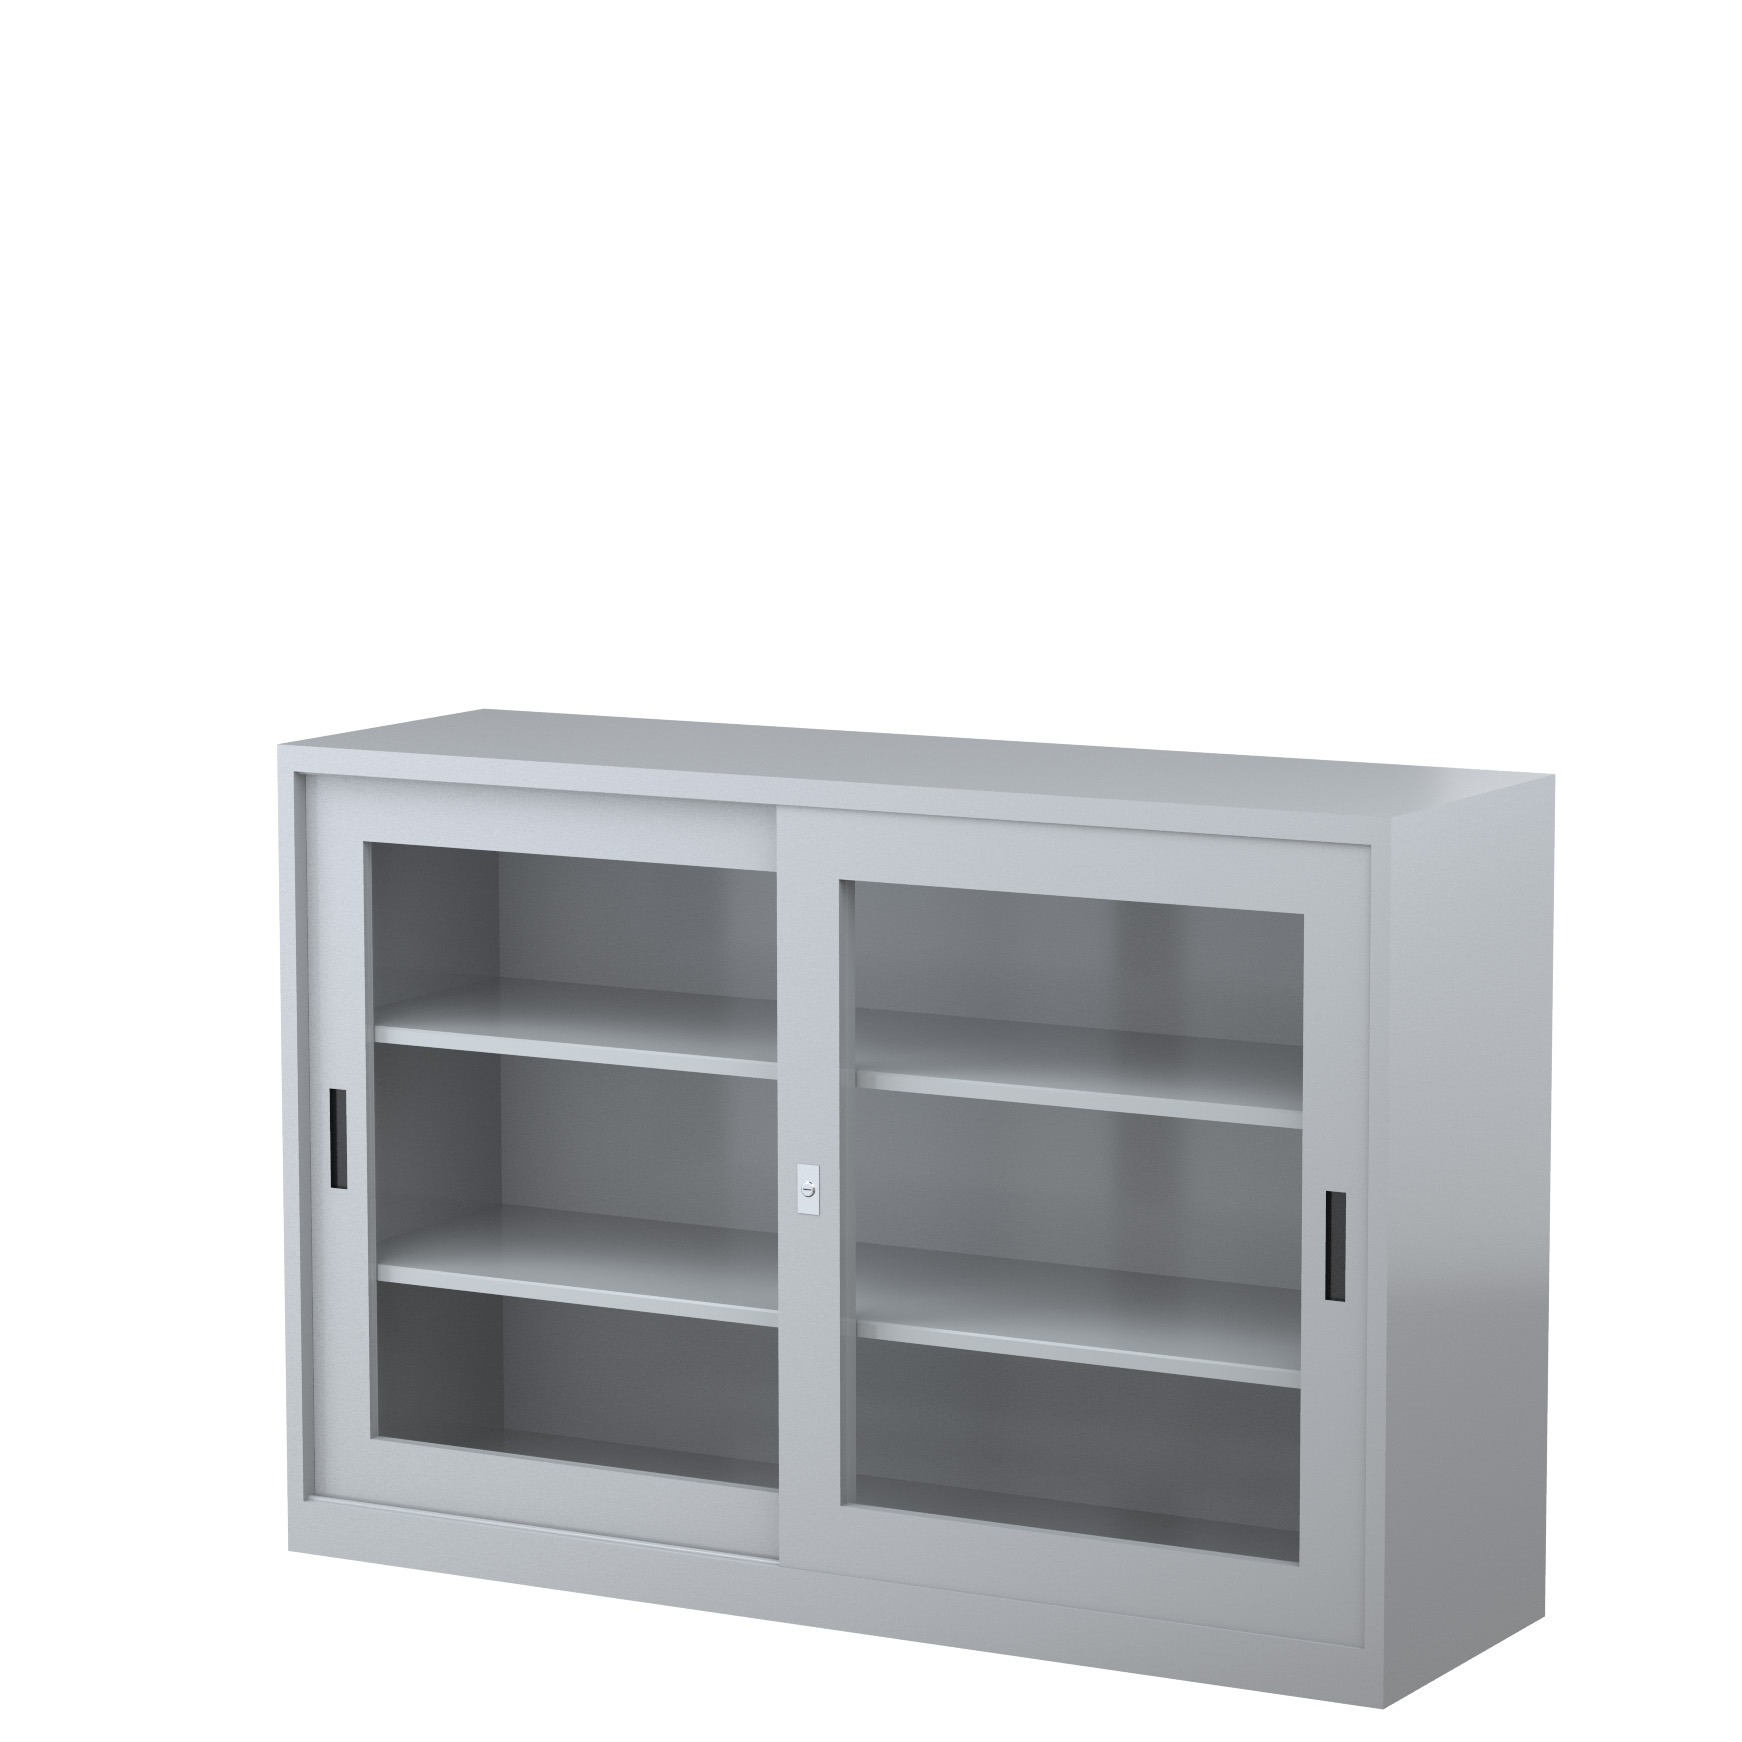 GD1830_1500 - STEELCO SG Cabinet 1830H x 1500W x 465D - 3 Shelves-GR6.jpg